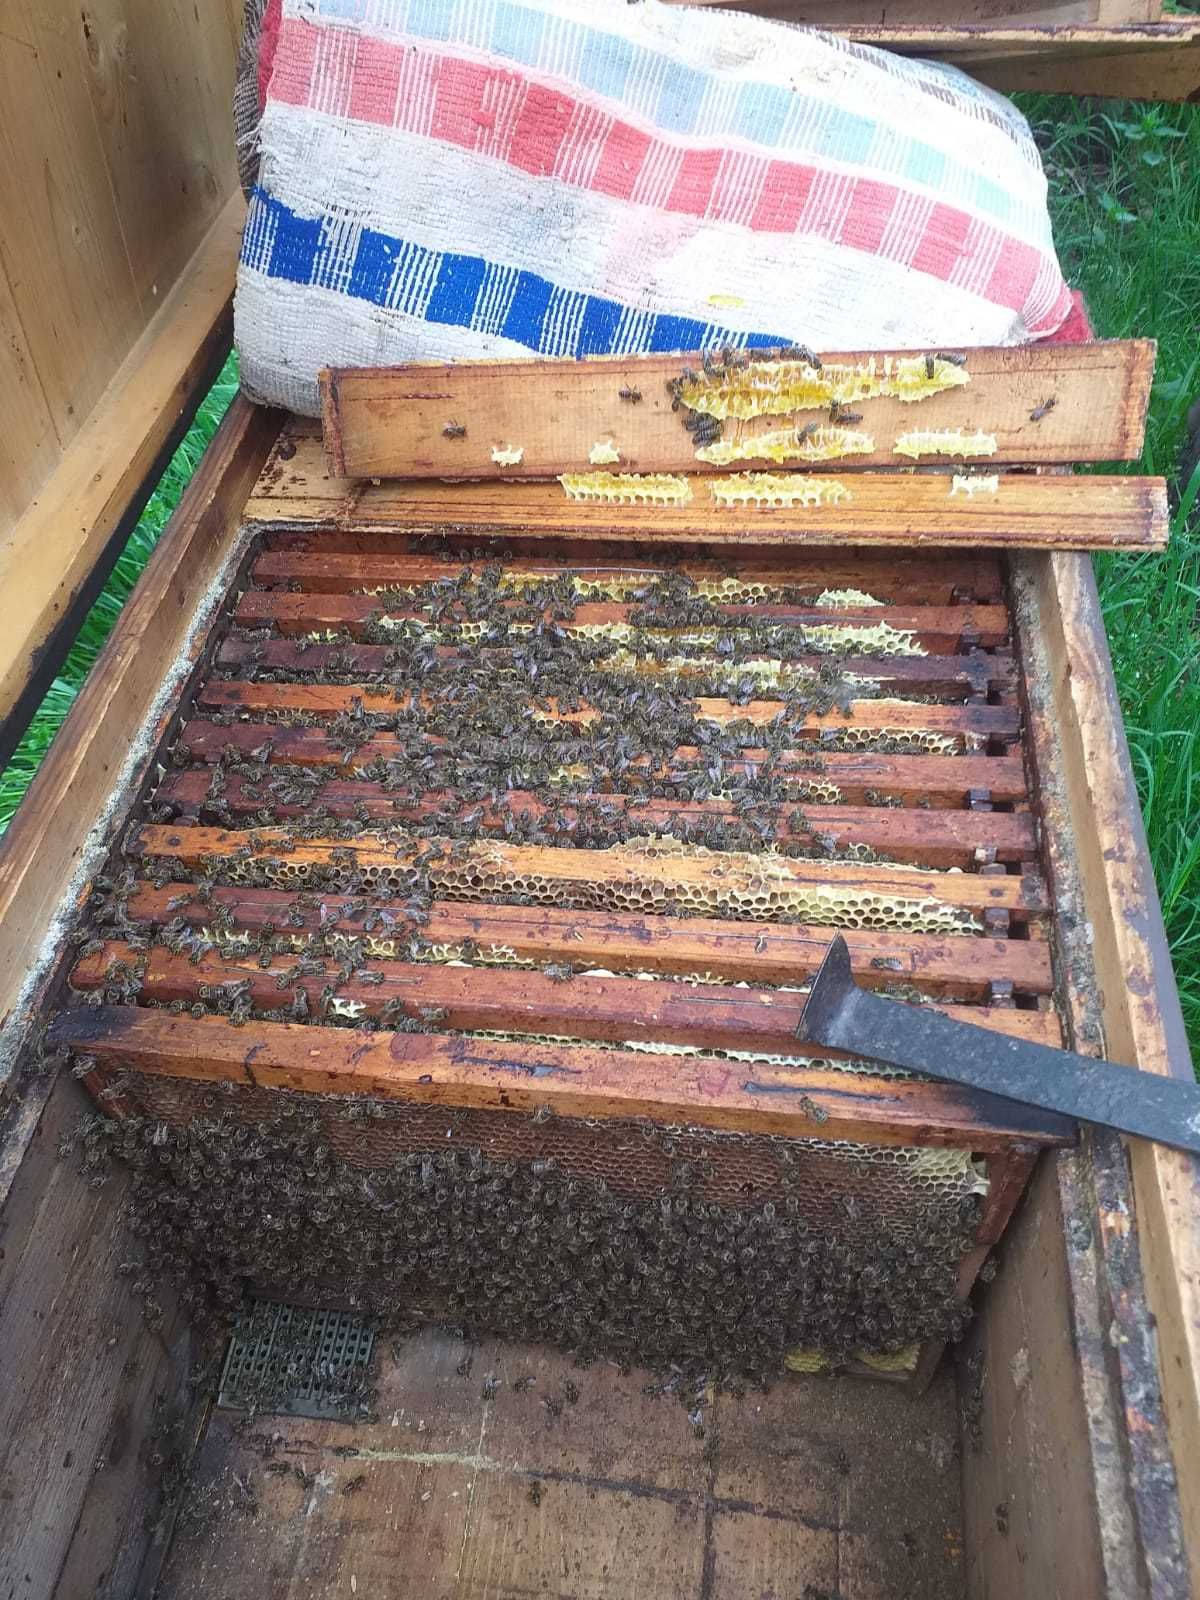 Vand familii de albine 5-7 rame (90ron/rama) pot sa dau si cutii